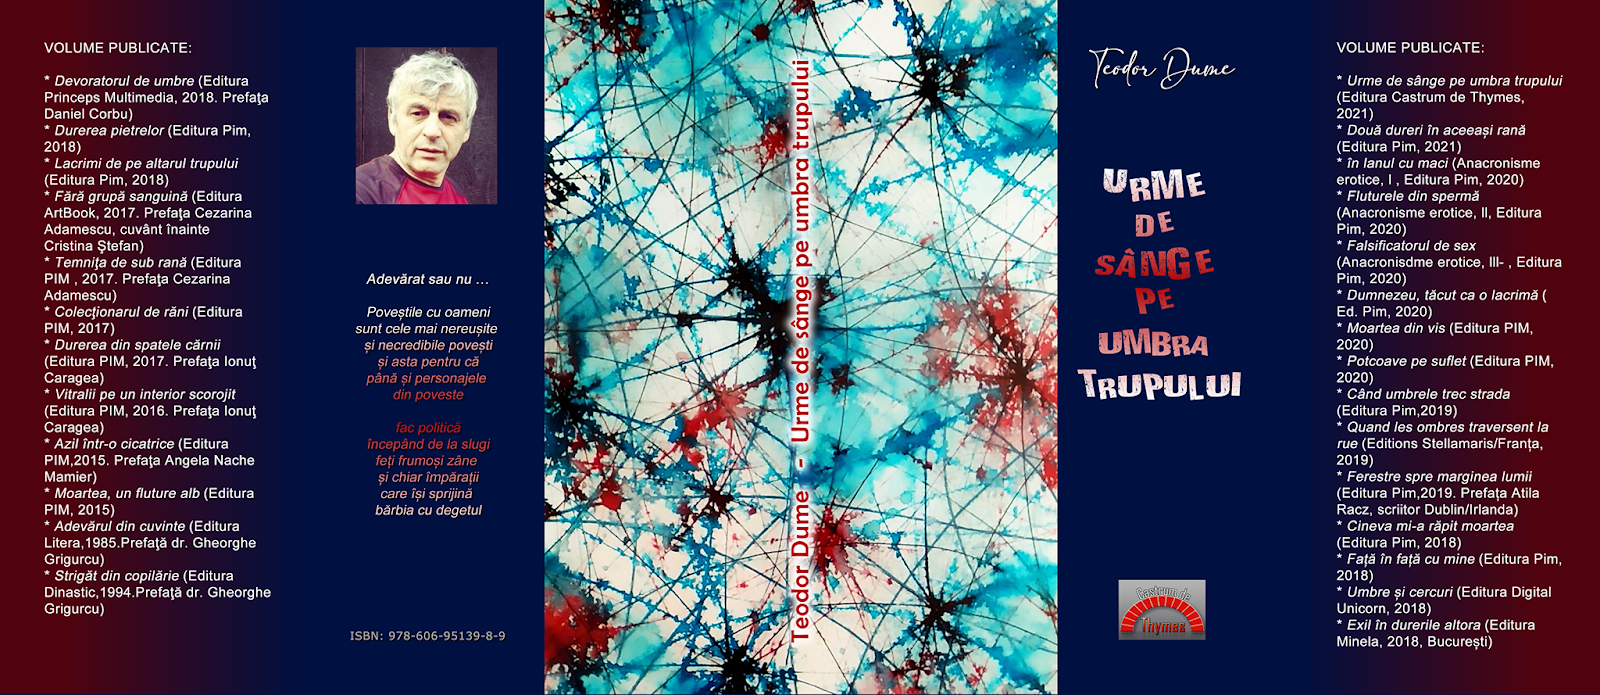 Teodor Dume, carte: Urme de sânge pe umbra trupului, Editura Pim, 2021